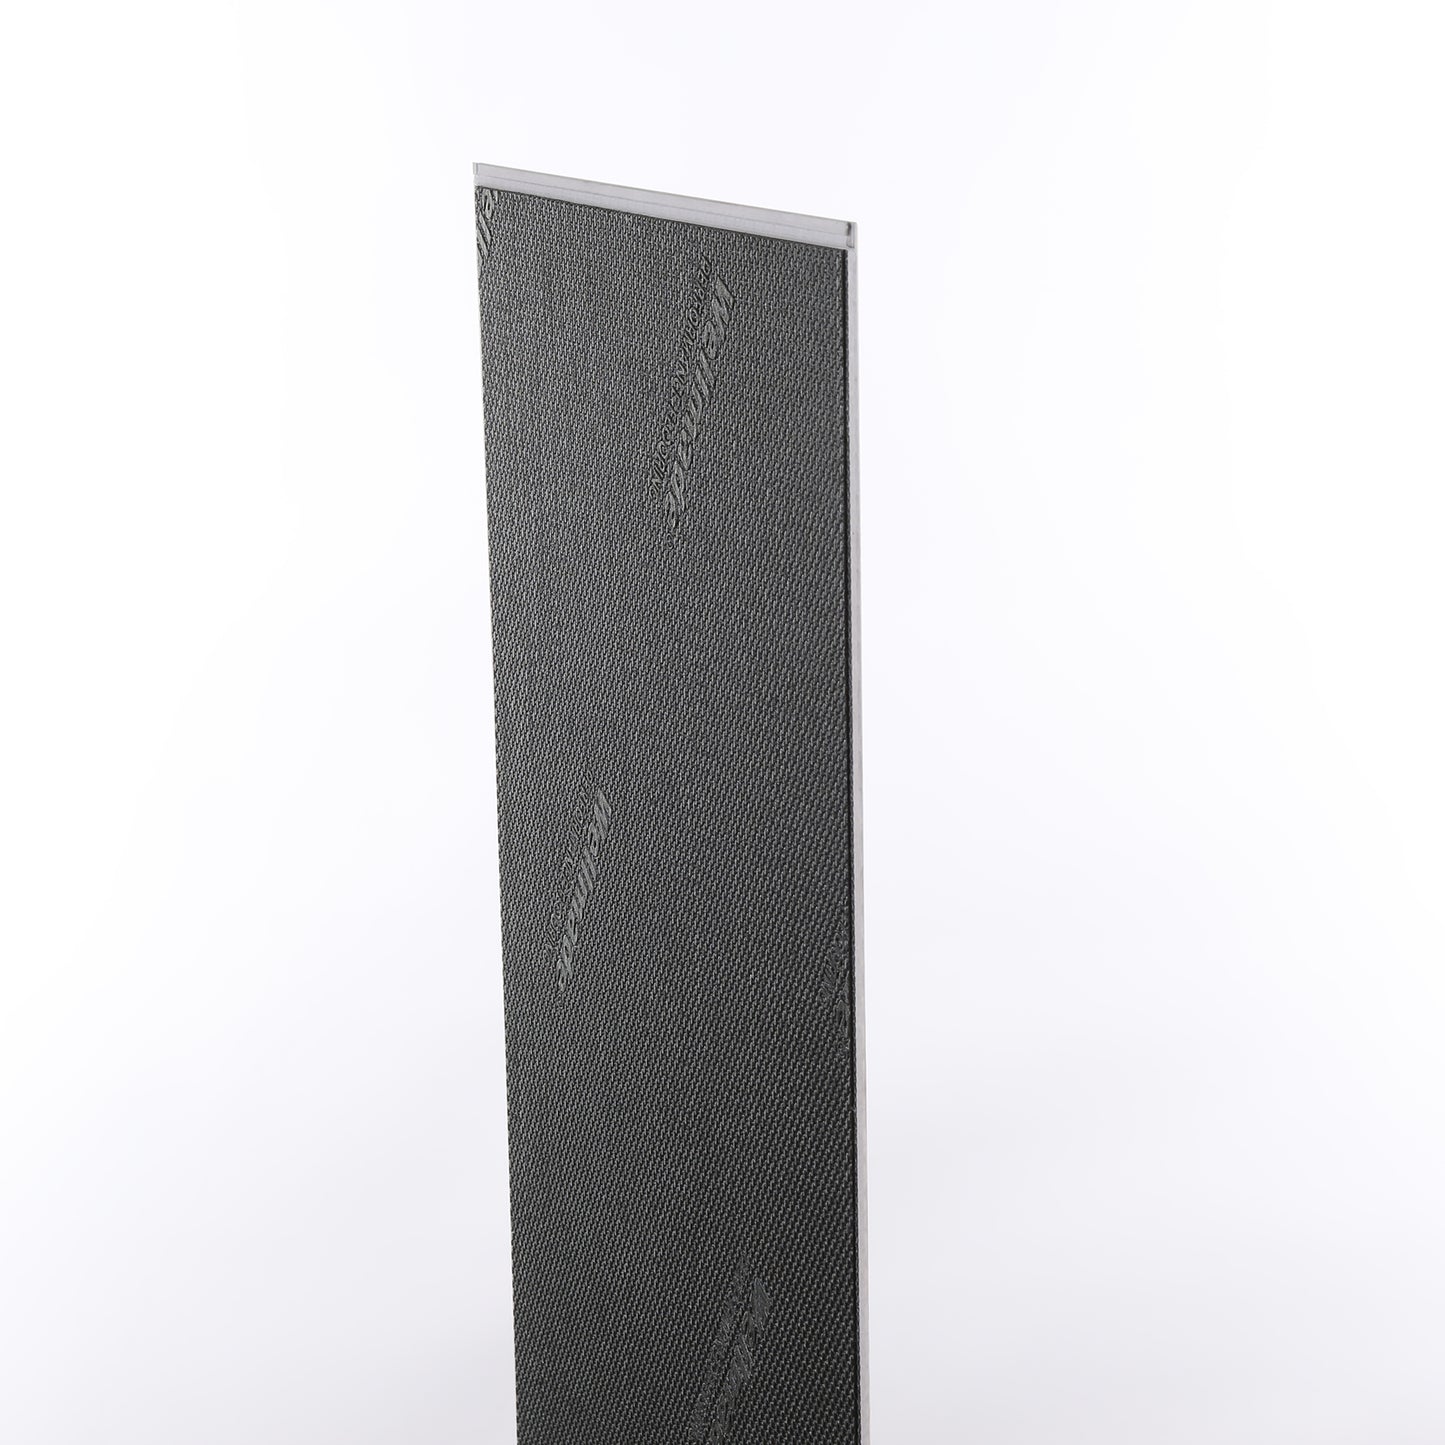 6mm Creme Brule HDPC® Waterproof Luxury Vinyl Plank Flooring 9.13 in. Wide x 60 in. Long